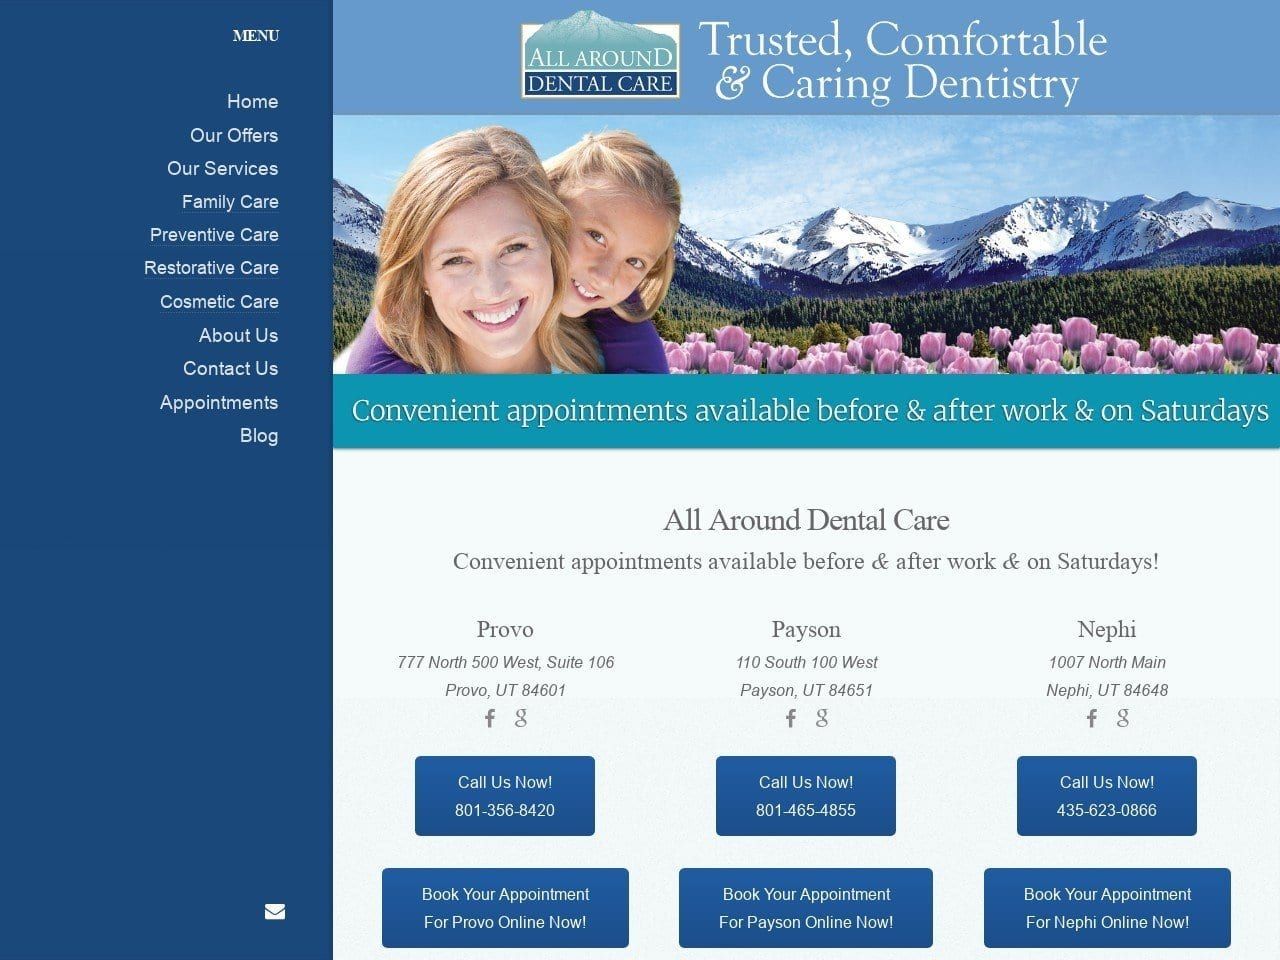 All Around Dental Care Website Screenshot from allarounddentalcare.com